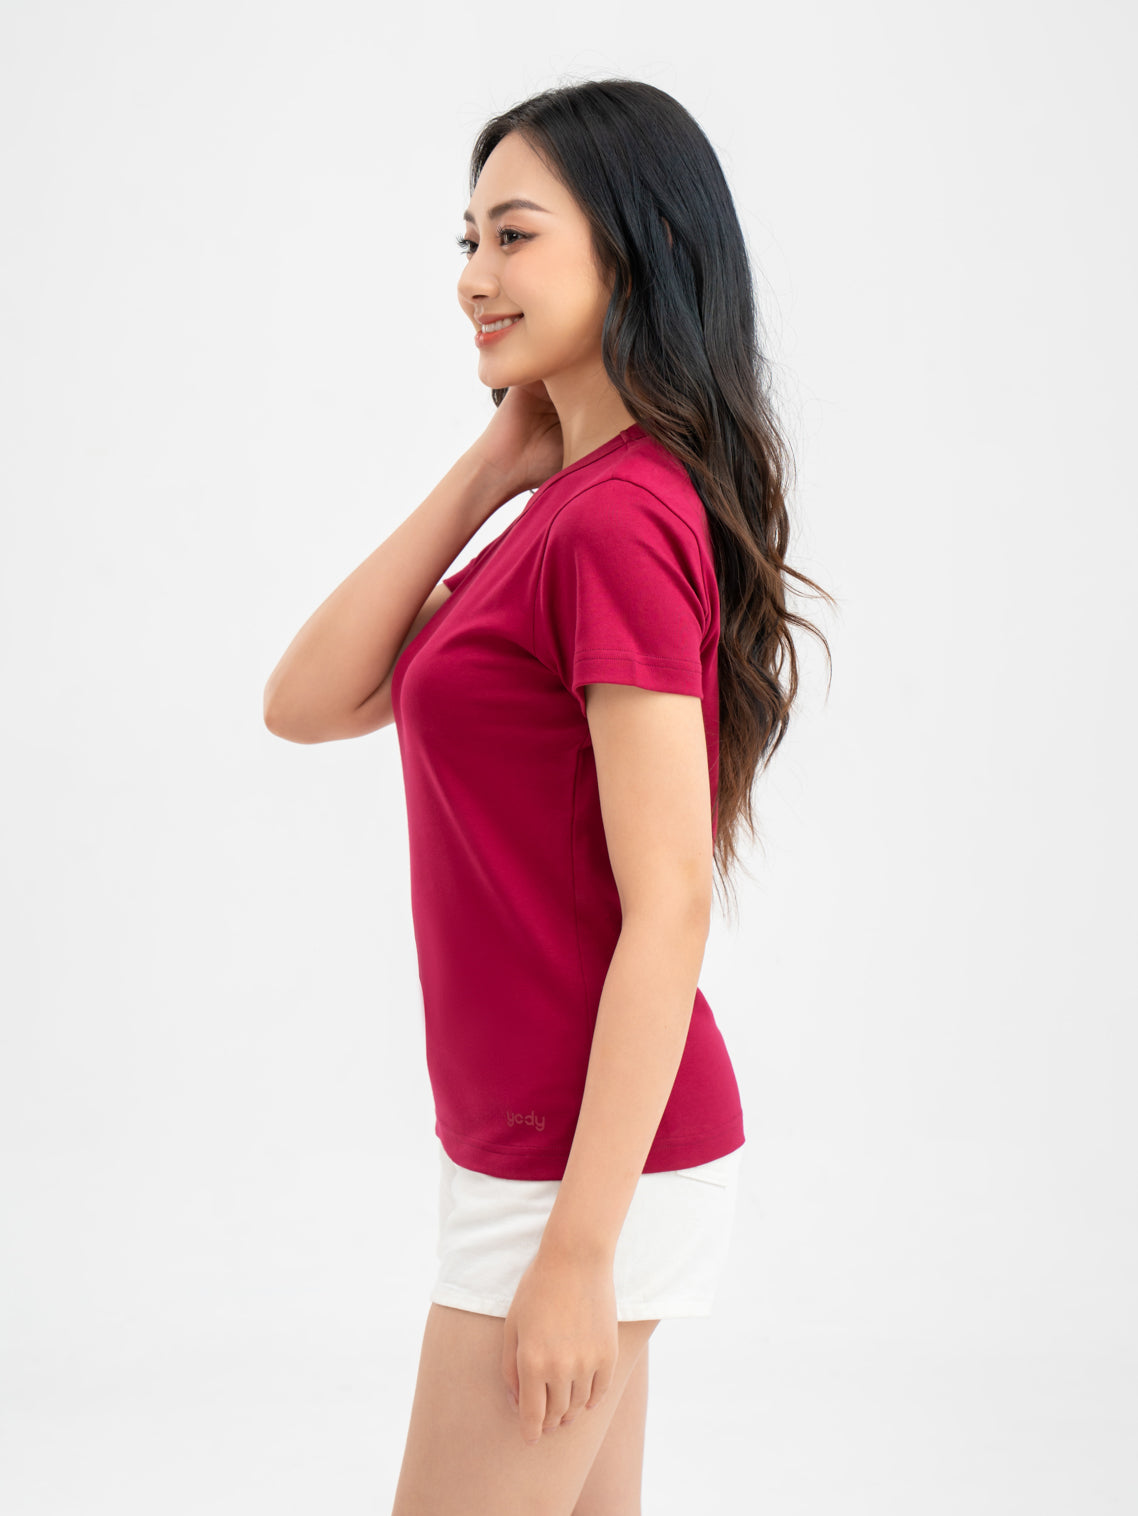 เสื้อยืดผู้หญิงผ้าคอตตอน YODY มีหน้าผ้า2 ด้านที่นุ่มเป็นพิเศษ ใส่ดูมีพลัง TSN6262